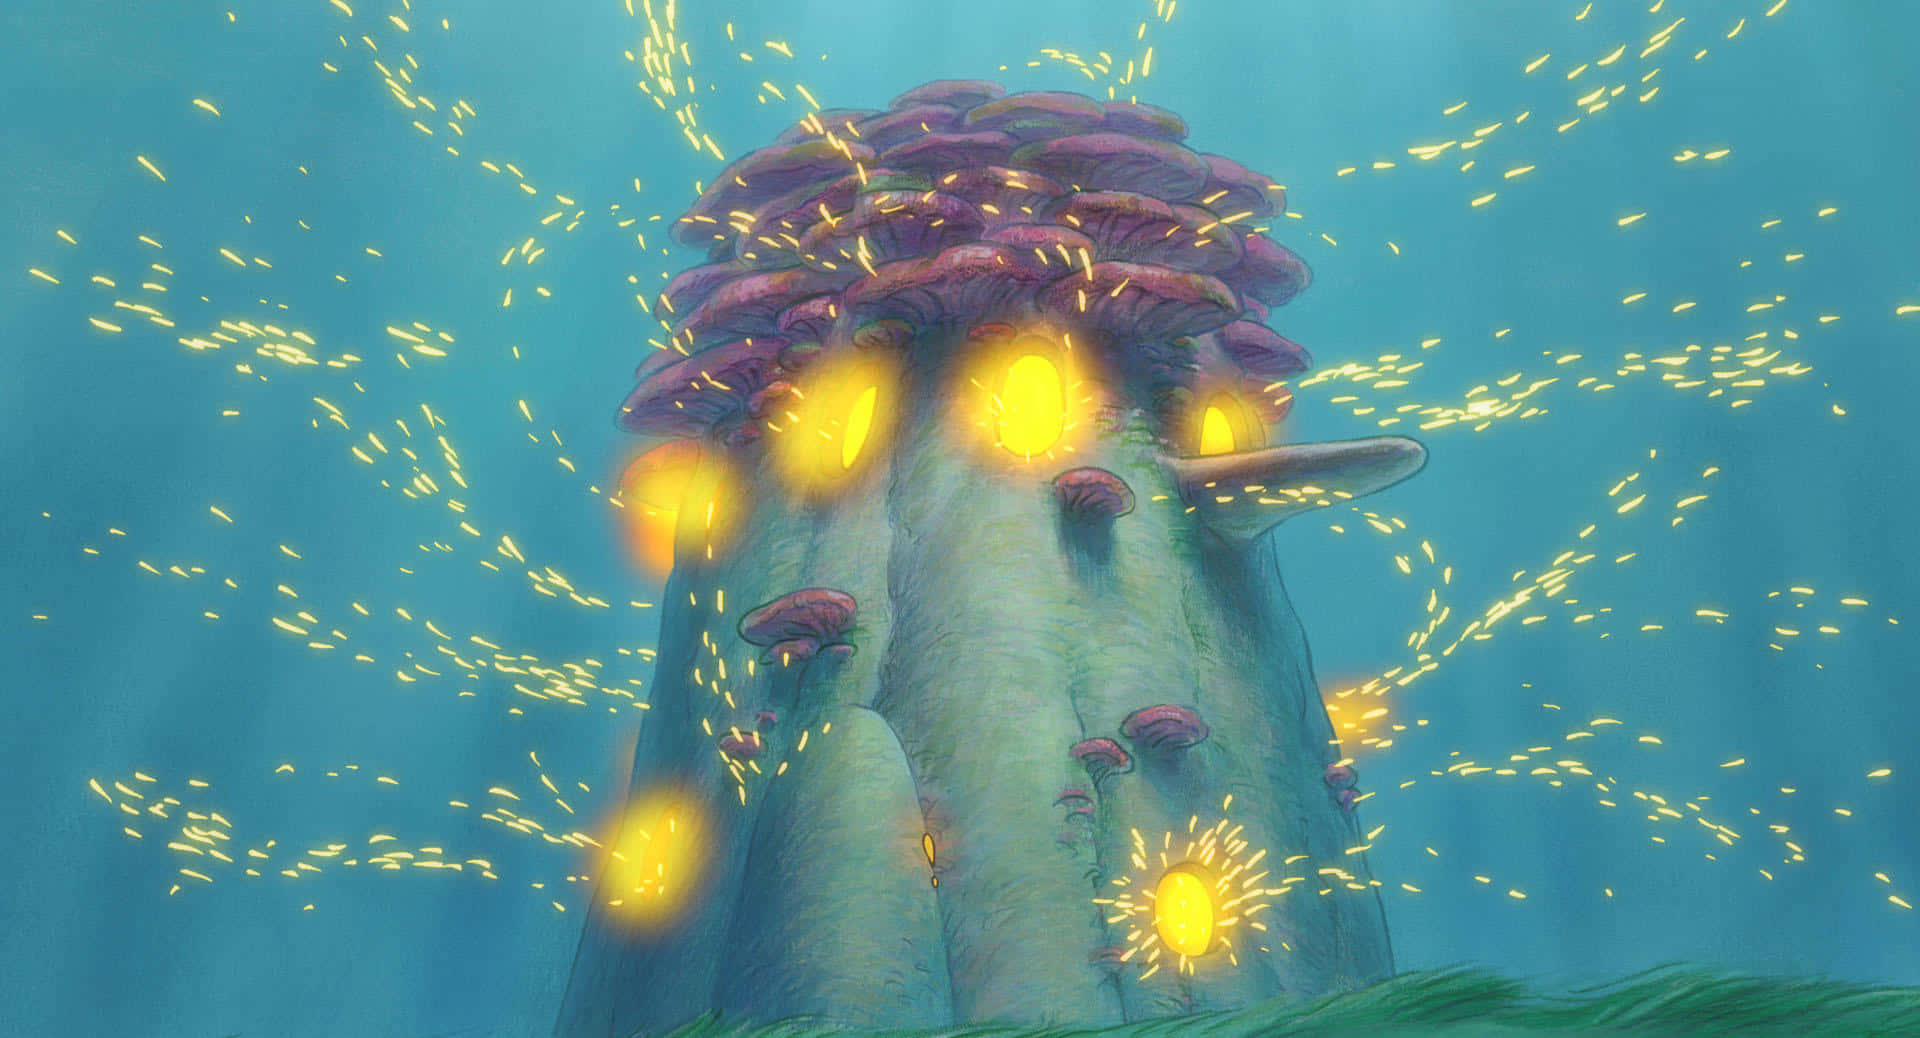 A whimsical world - Studio Ghibli inspired scenic background